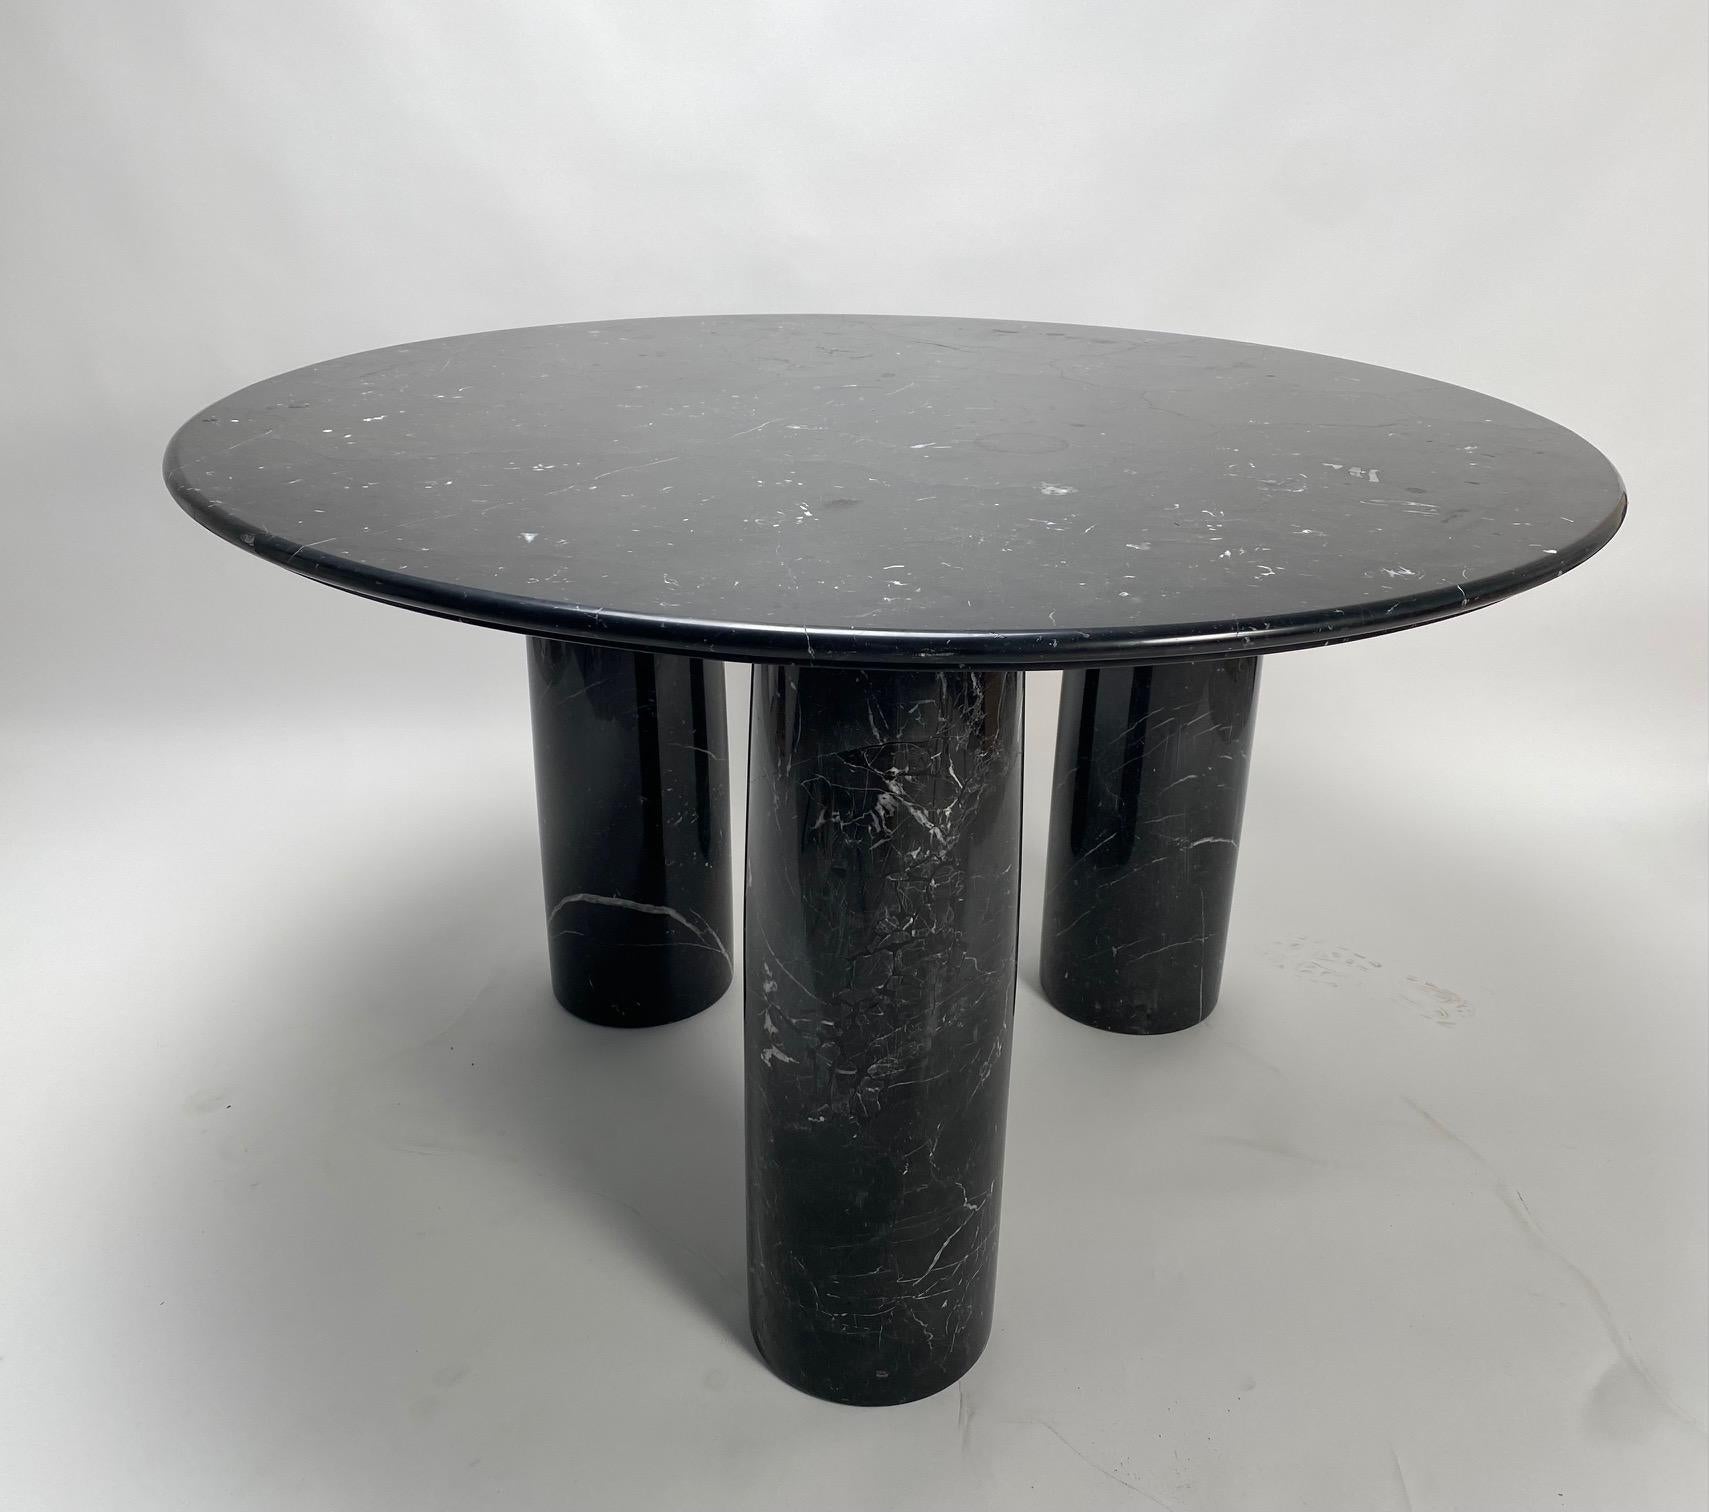 Der von dem berühmten italienischen Architekten Mario Bellini für die Firma Cassina entworfene Tisch wurde in den 1970er Jahren konzipiert und lässt sich von der Architektur der römischen Antike inspirieren. Dieses Exemplar hat eine runde Platte aus